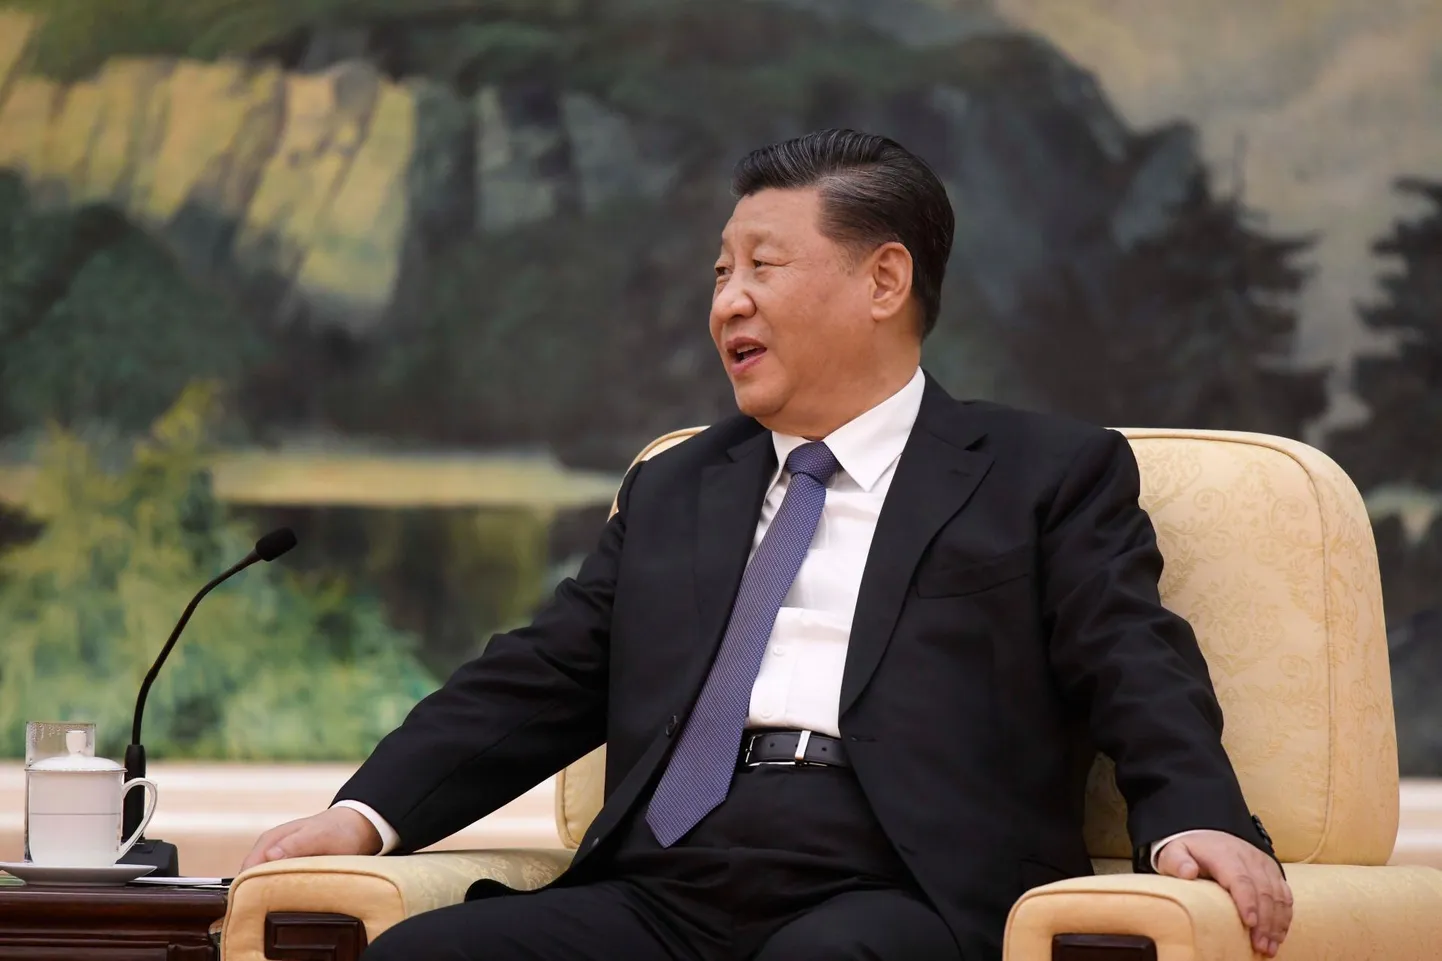 Hiina president Xi Jinping eelmise nädala alguses, kui ta võõrustas Pekingis Maailma Terviseorganisatsiooni (WHO) juhti. Koroonaviiruse epideemia laienedes on Hiina liidrit olnud meedias üha vähem ja vähem näha.